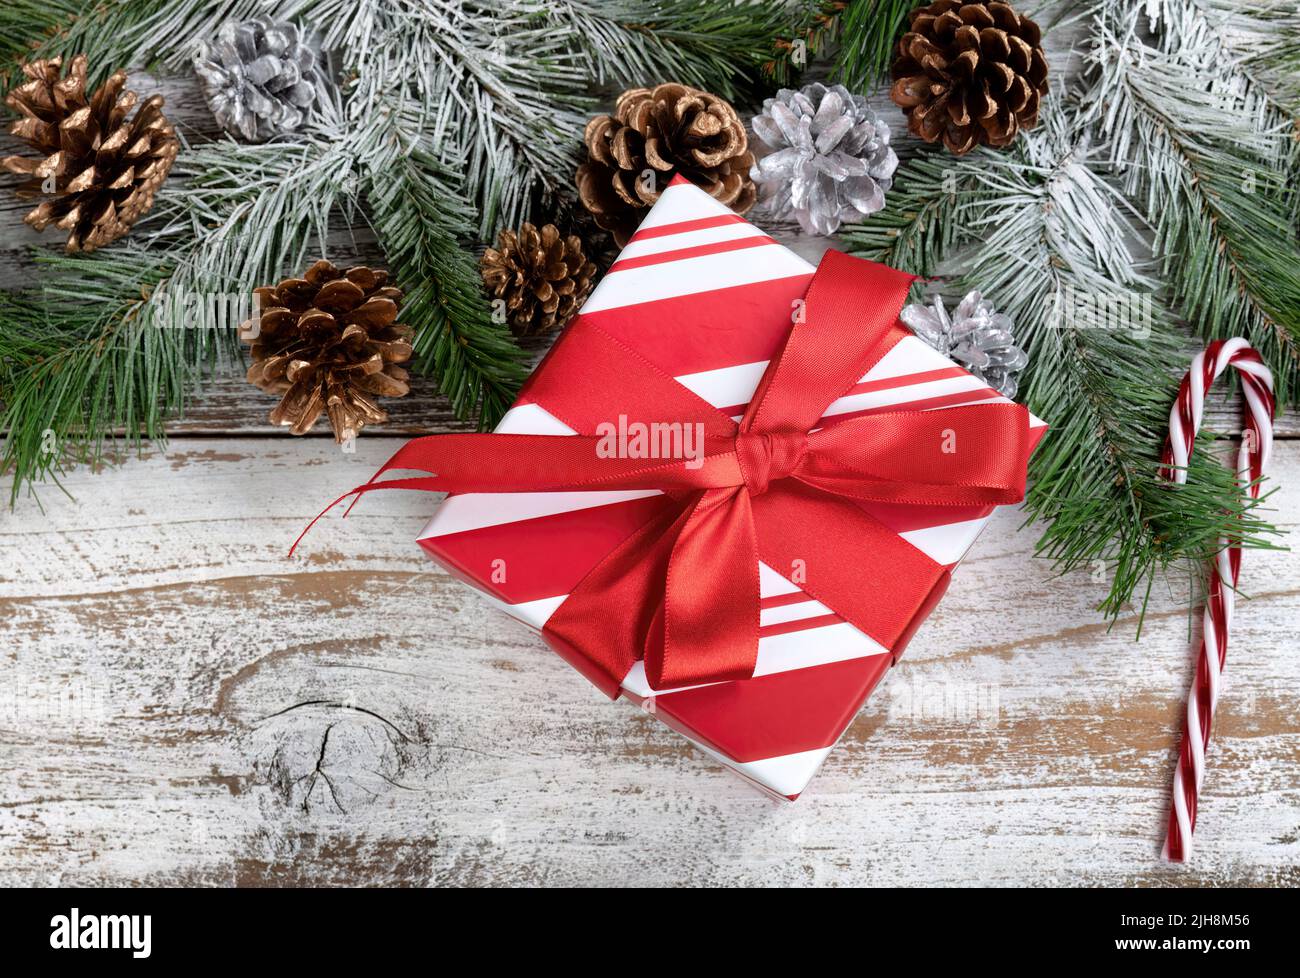 Concept de Noël et du nouvel an avec branches de sapin enneigées, boîte-cadeau traditionnelle à rayures, canne à sucre et cônes de pin argenté sur rus blanc Banque D'Images